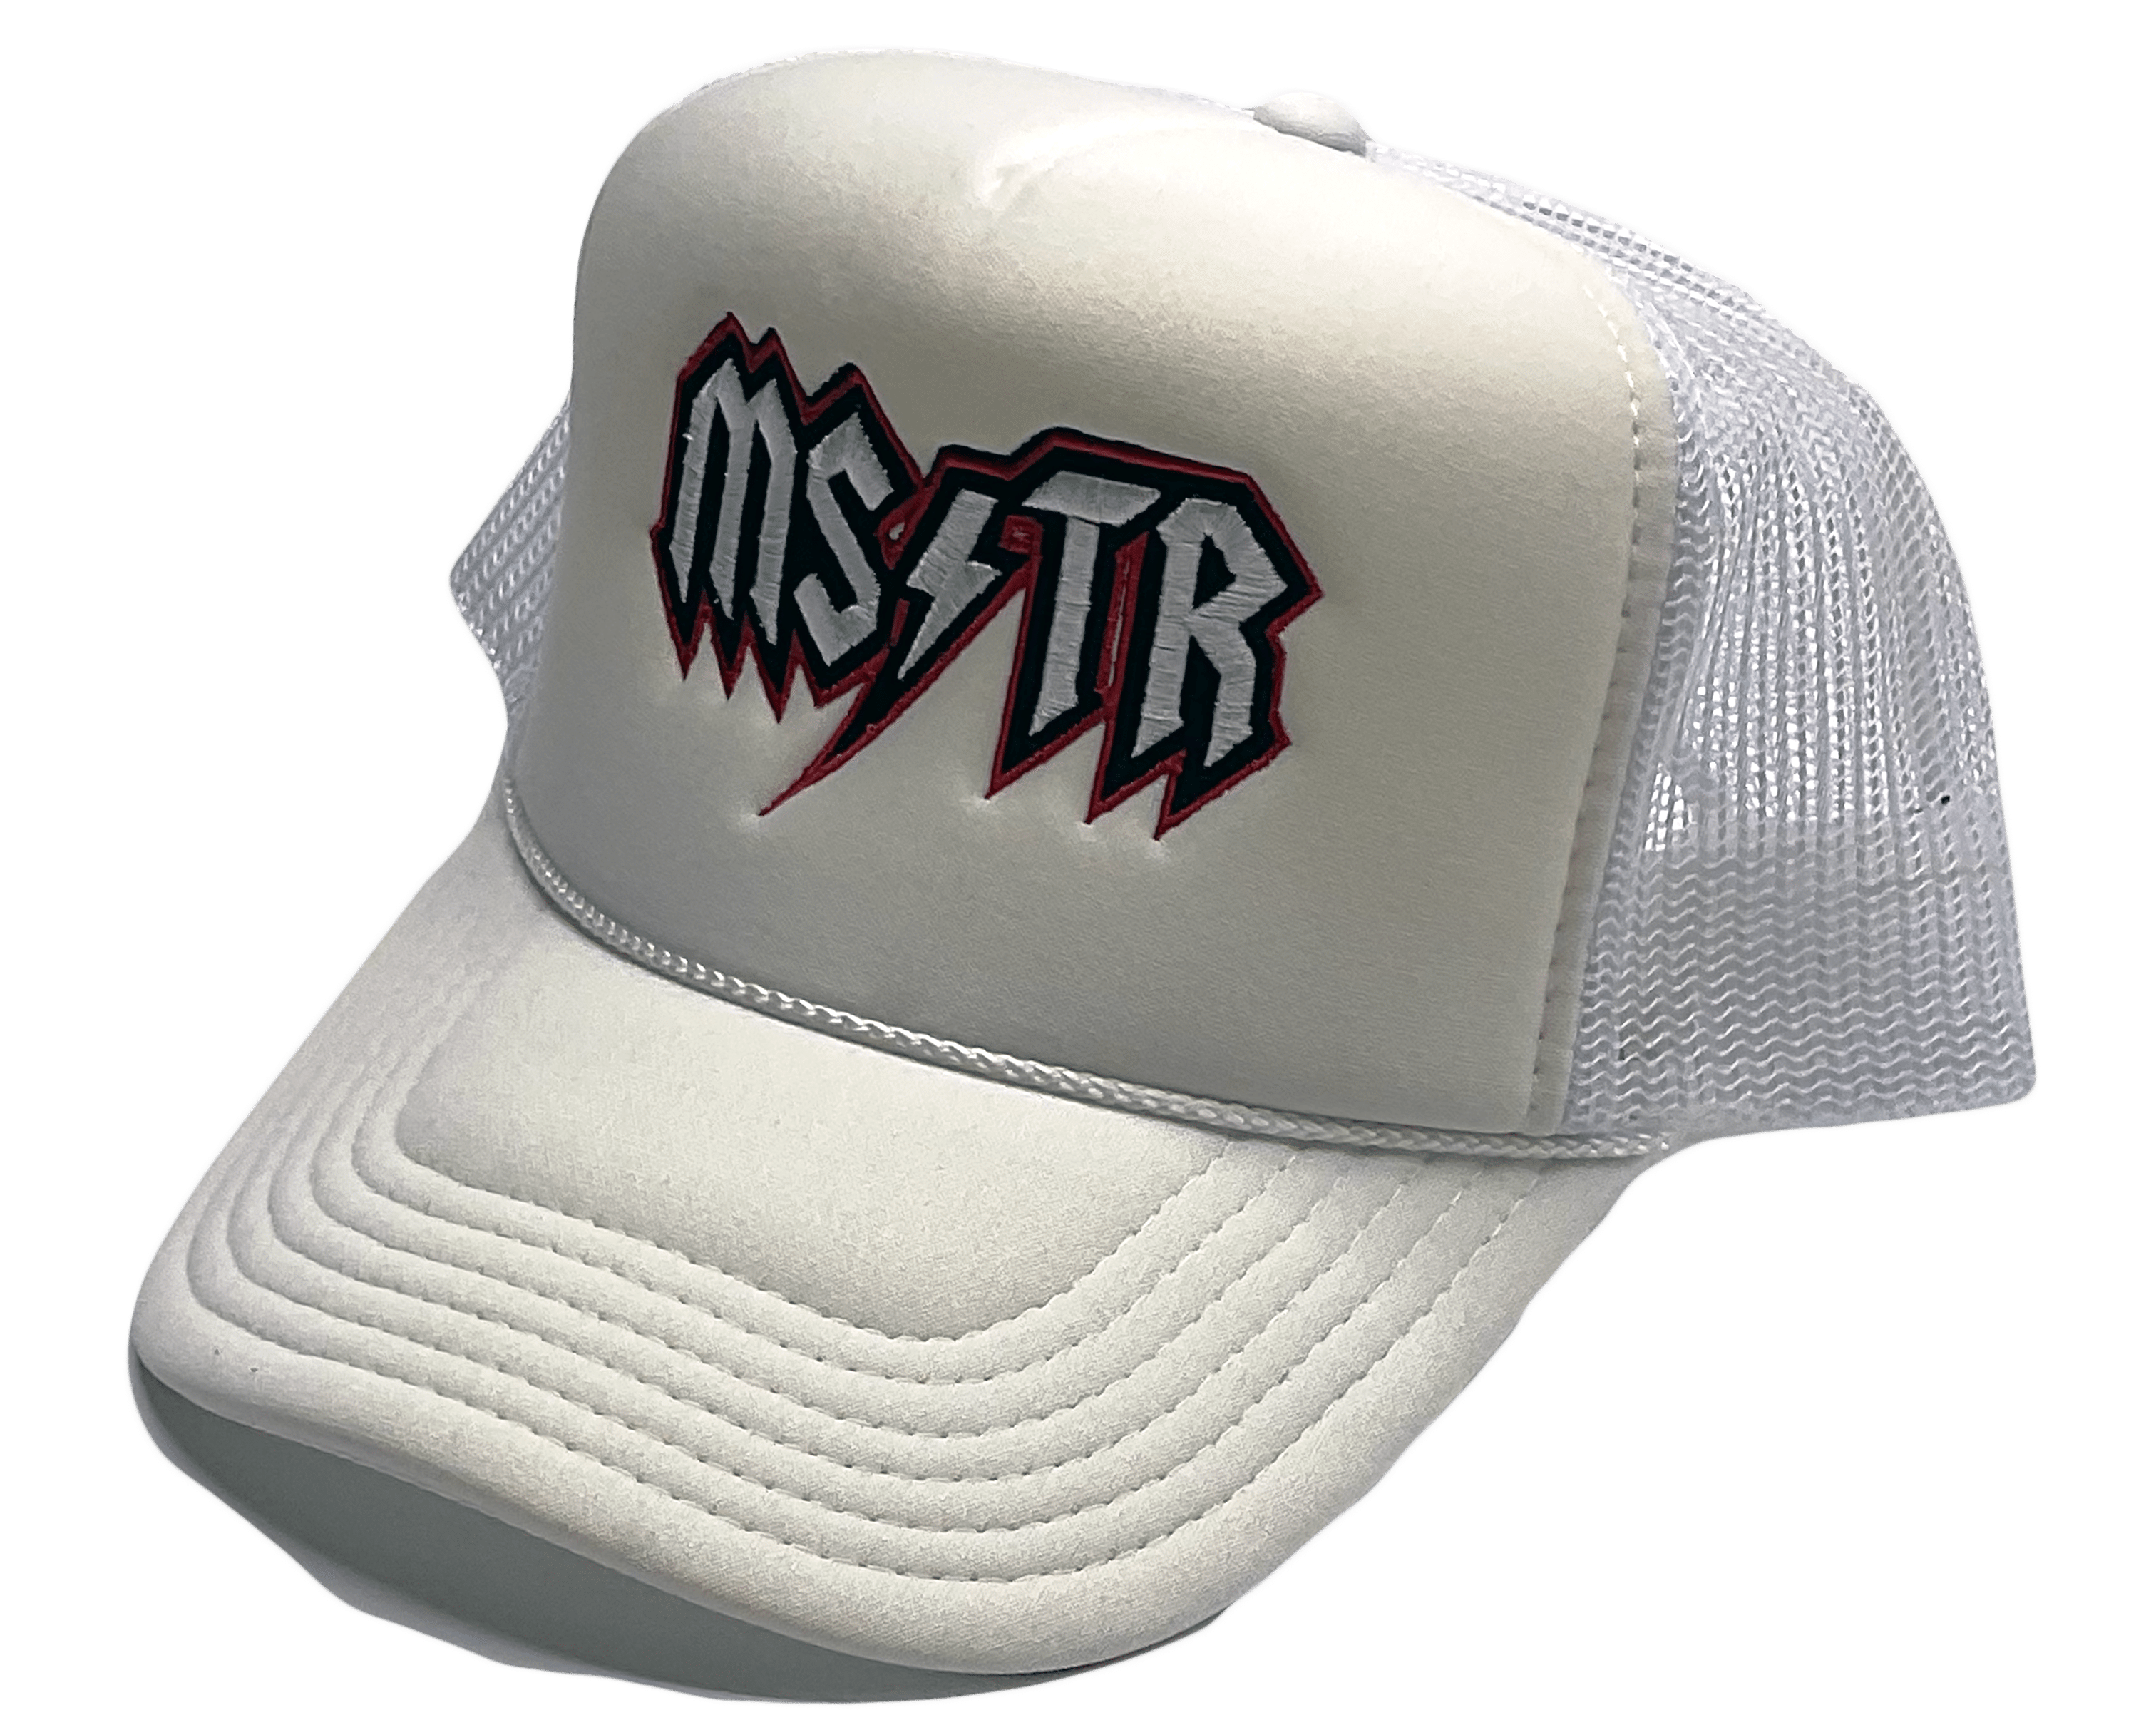 Mastermind315 White MSTR trucker cap